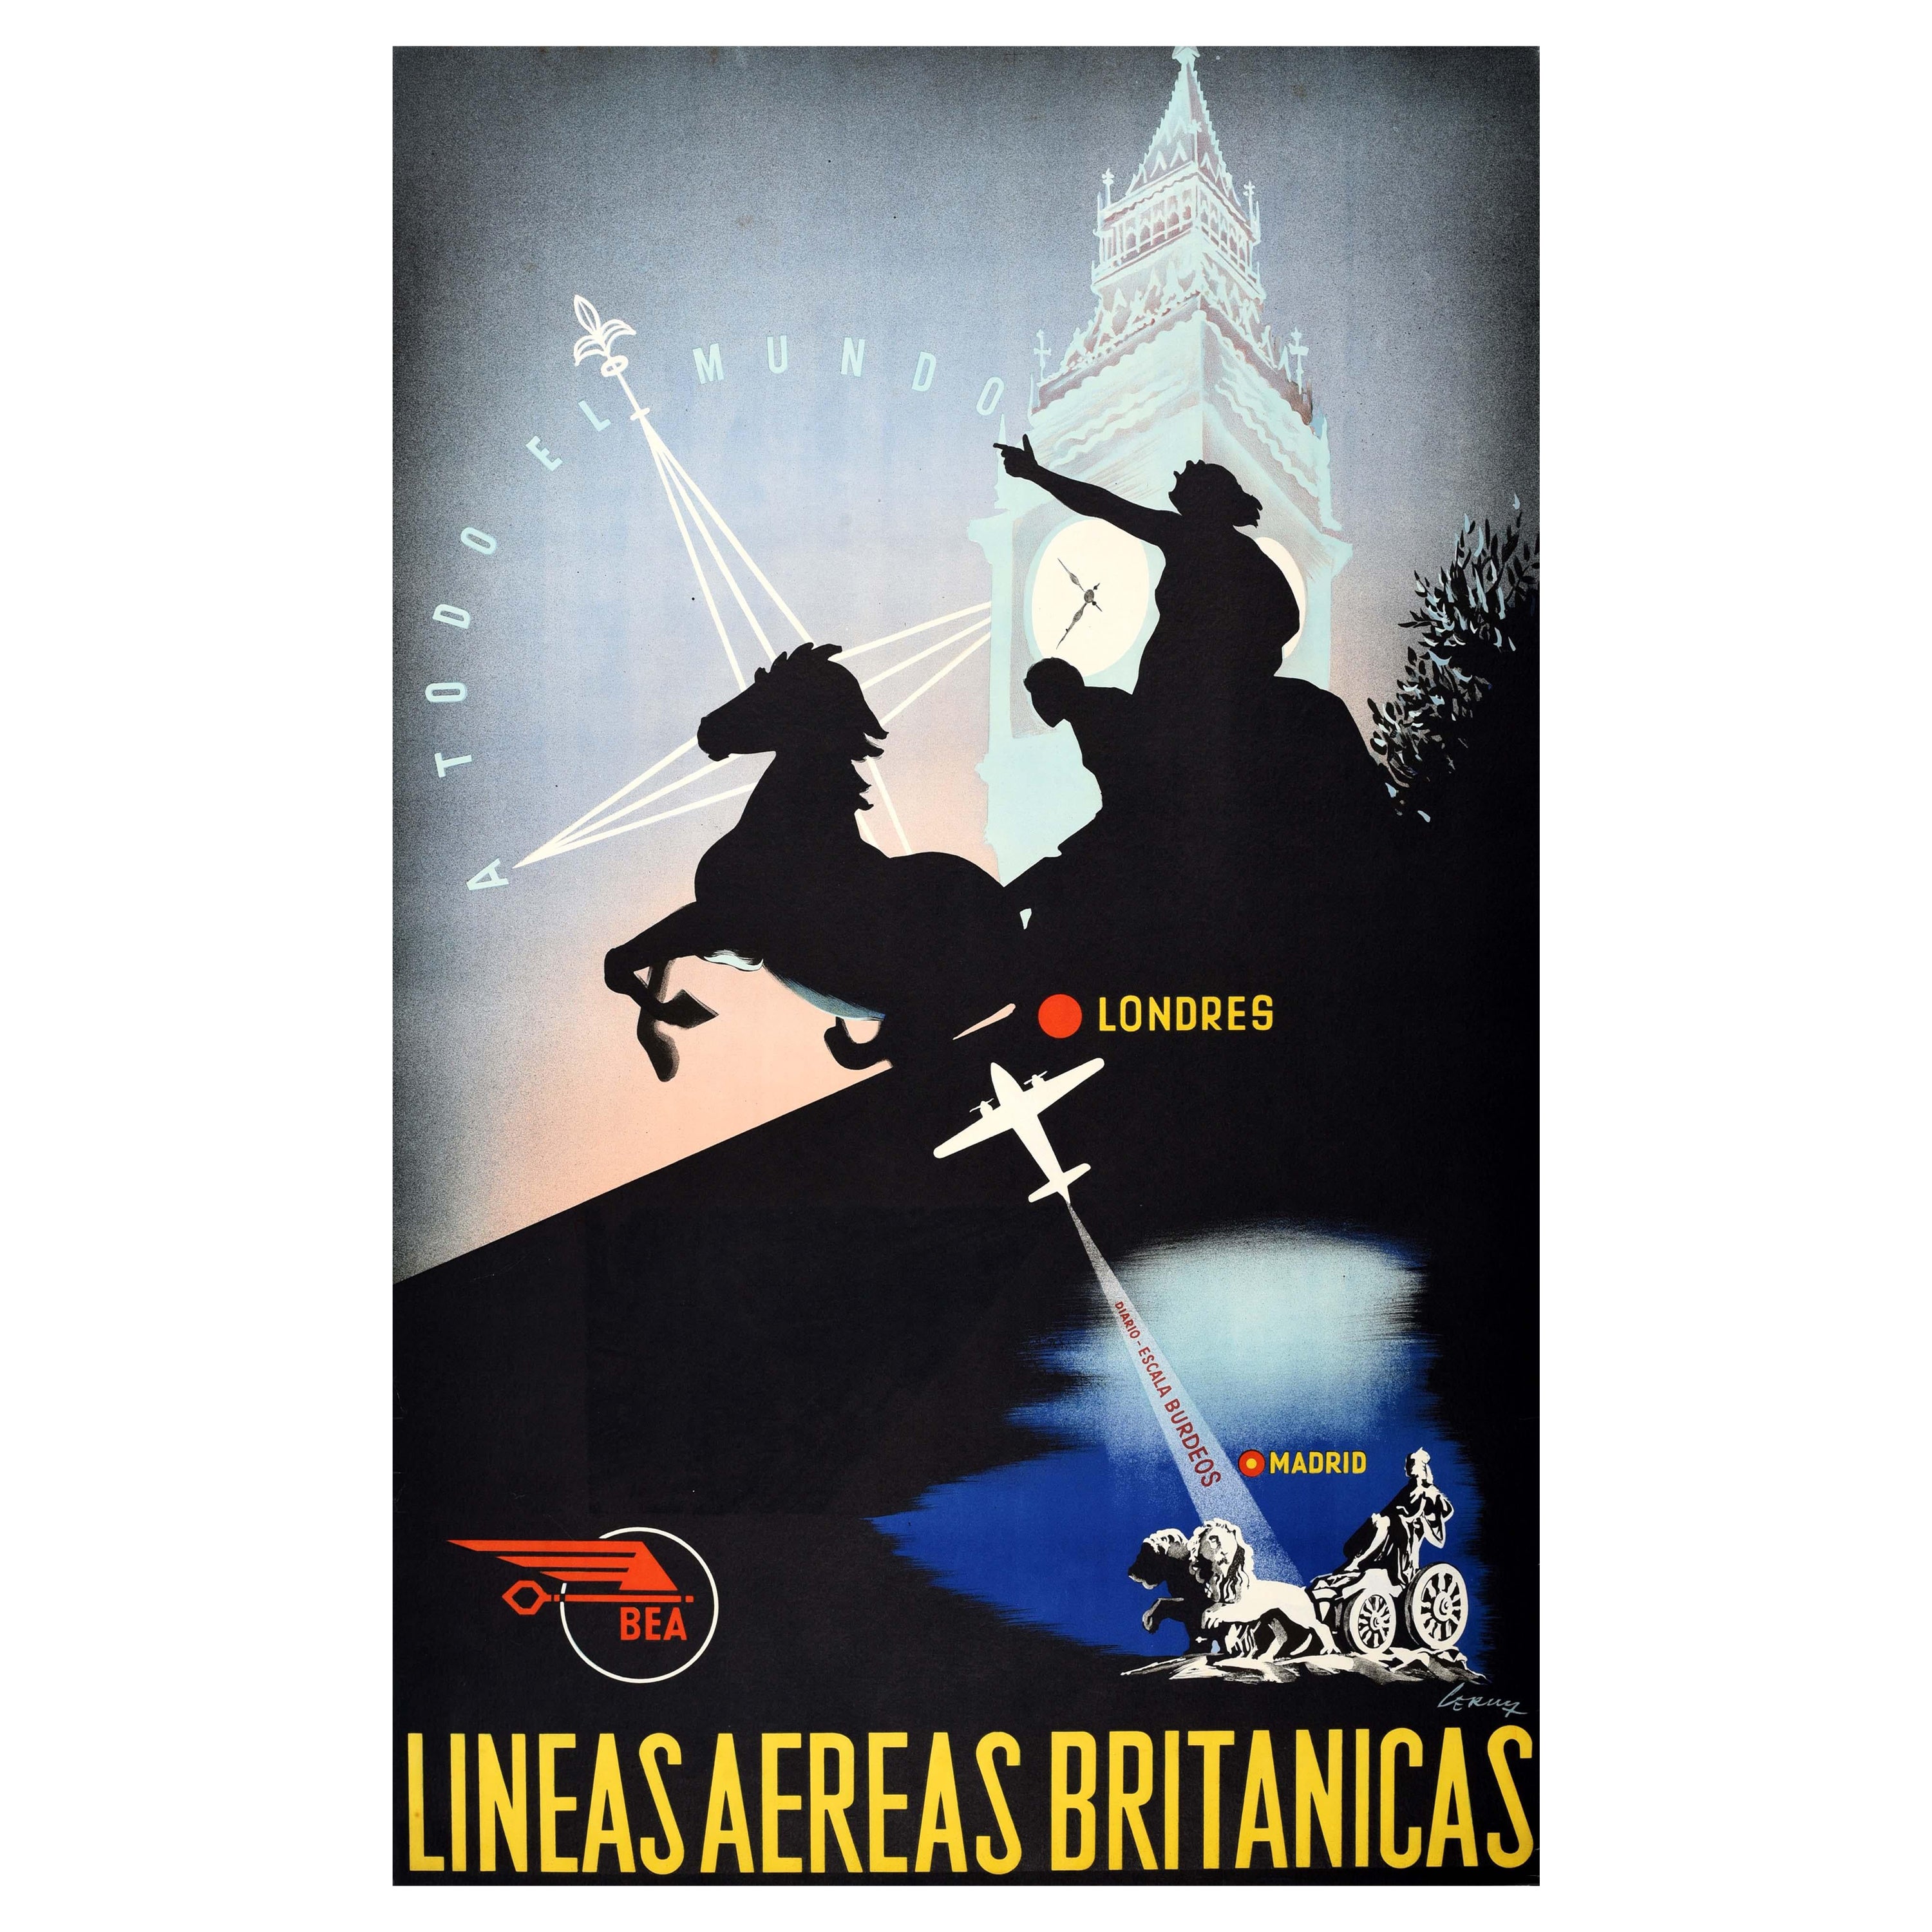 Affiche rétro originale de voyage d'une compagnie aérienne, Madrid à Londres, BEA To The Whole World